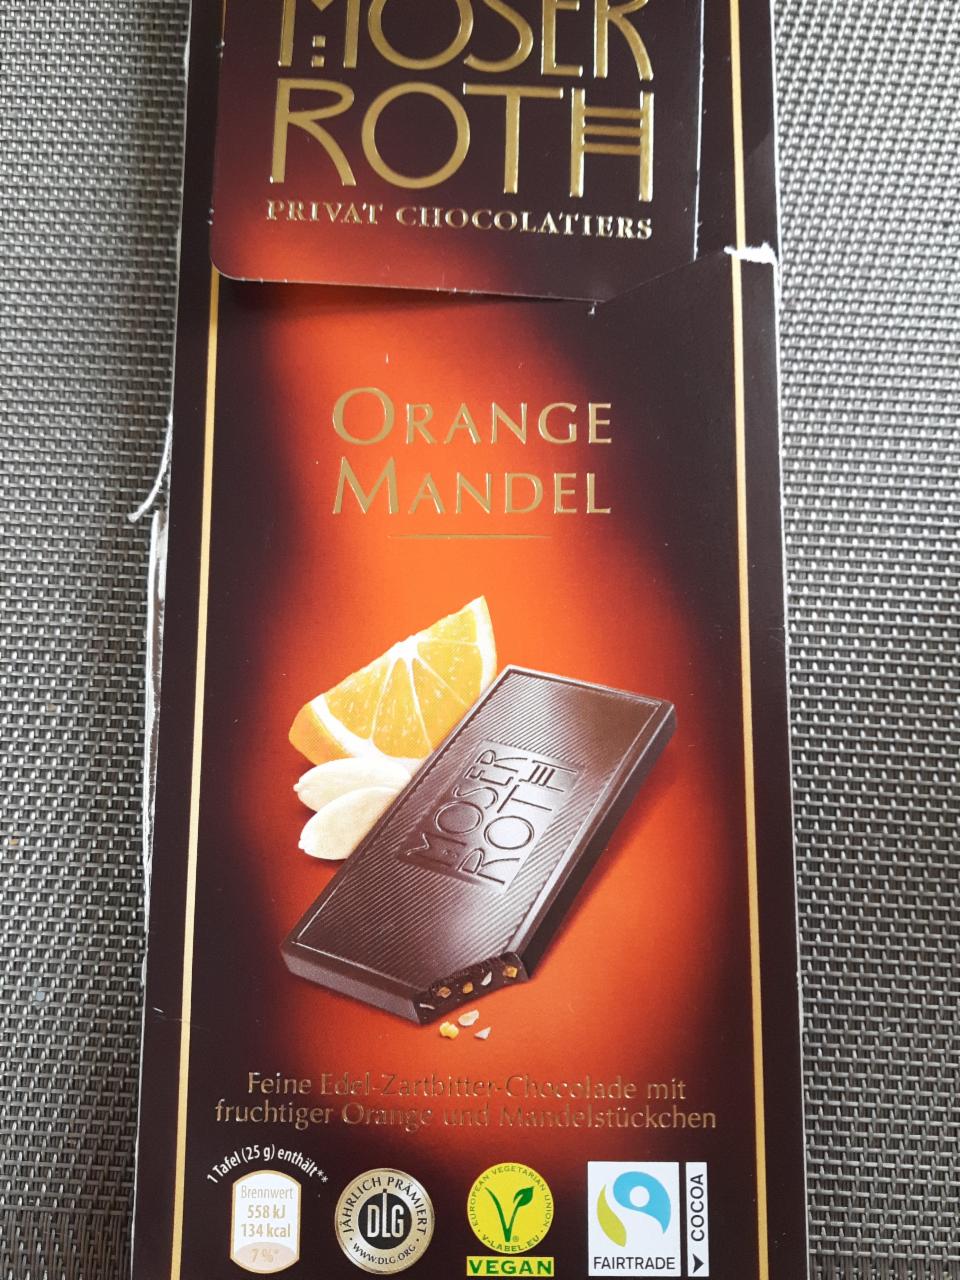 Фото - Шоколад черный апельсин с миндалем Orange Mandel Moser Roth